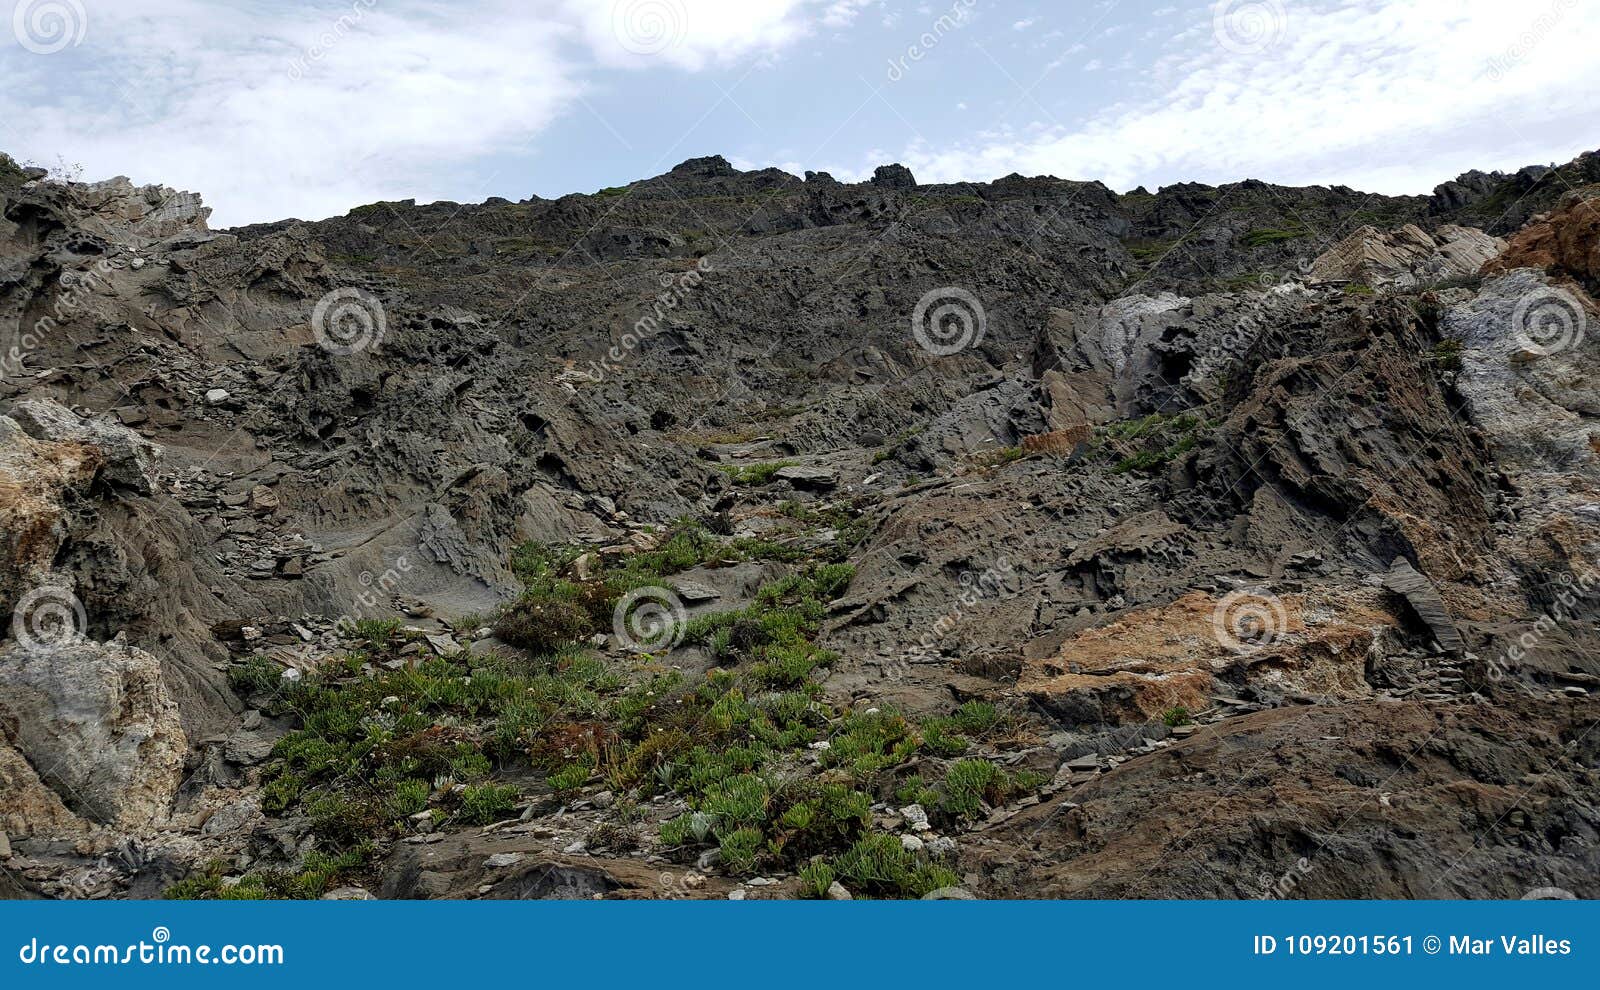 grey volcanic rocky landscape mountain